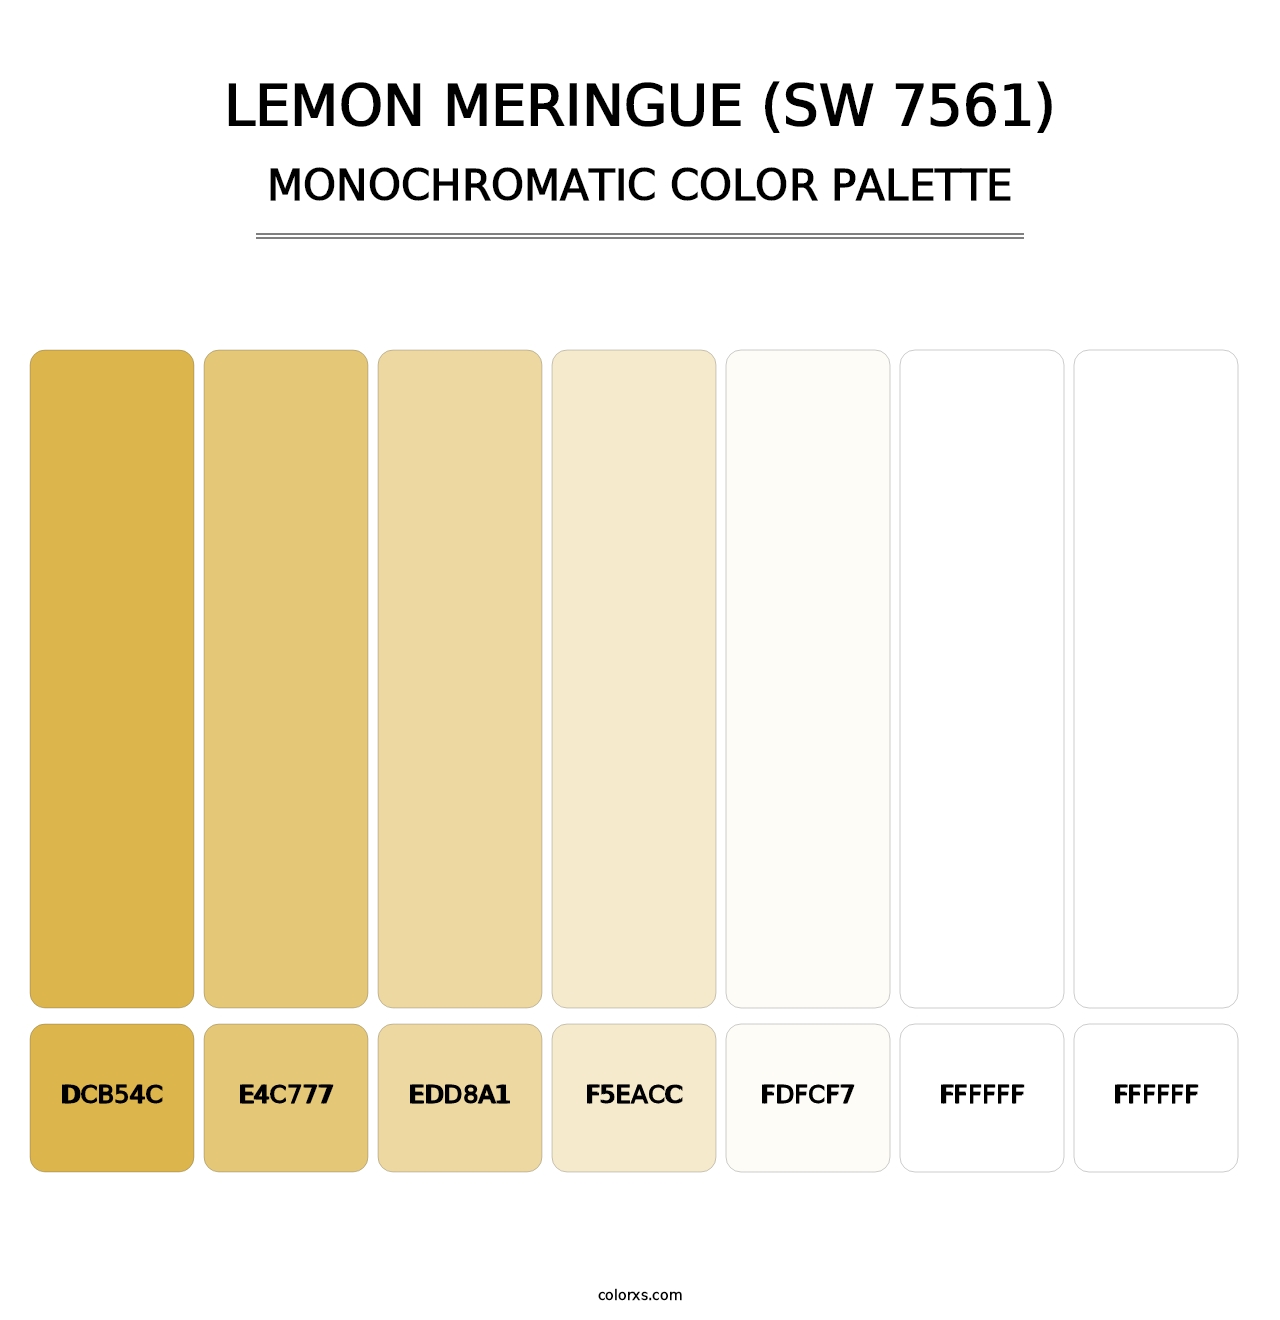 Lemon Meringue (SW 7561) - Monochromatic Color Palette